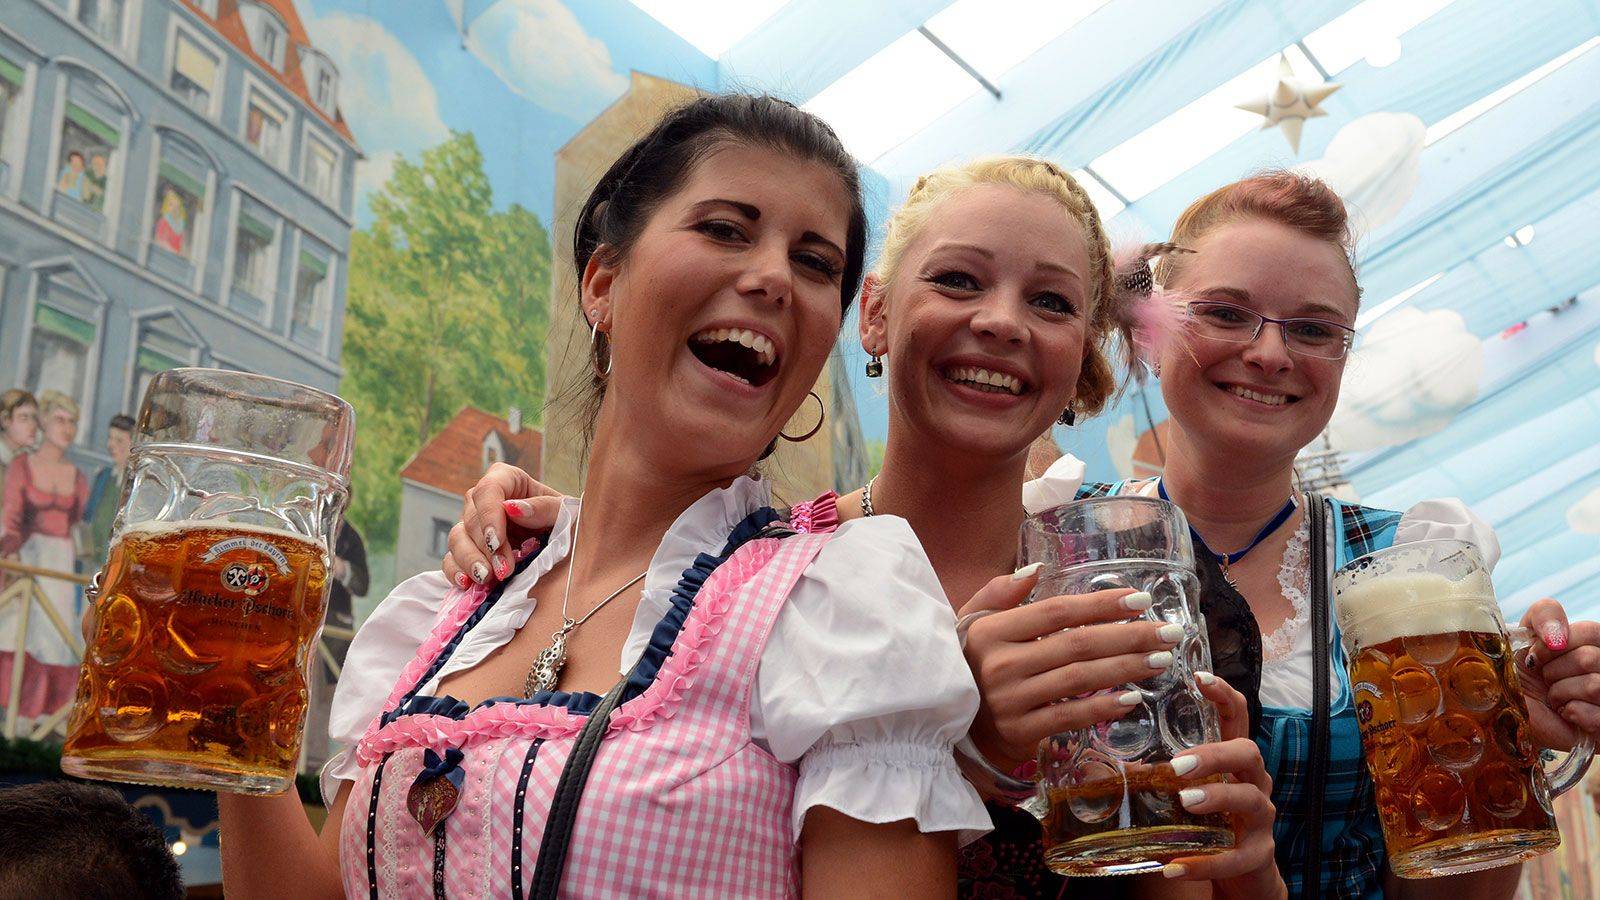 Oktoberfest Parklands in Canberra: Celebrating the Bavarian Tradition